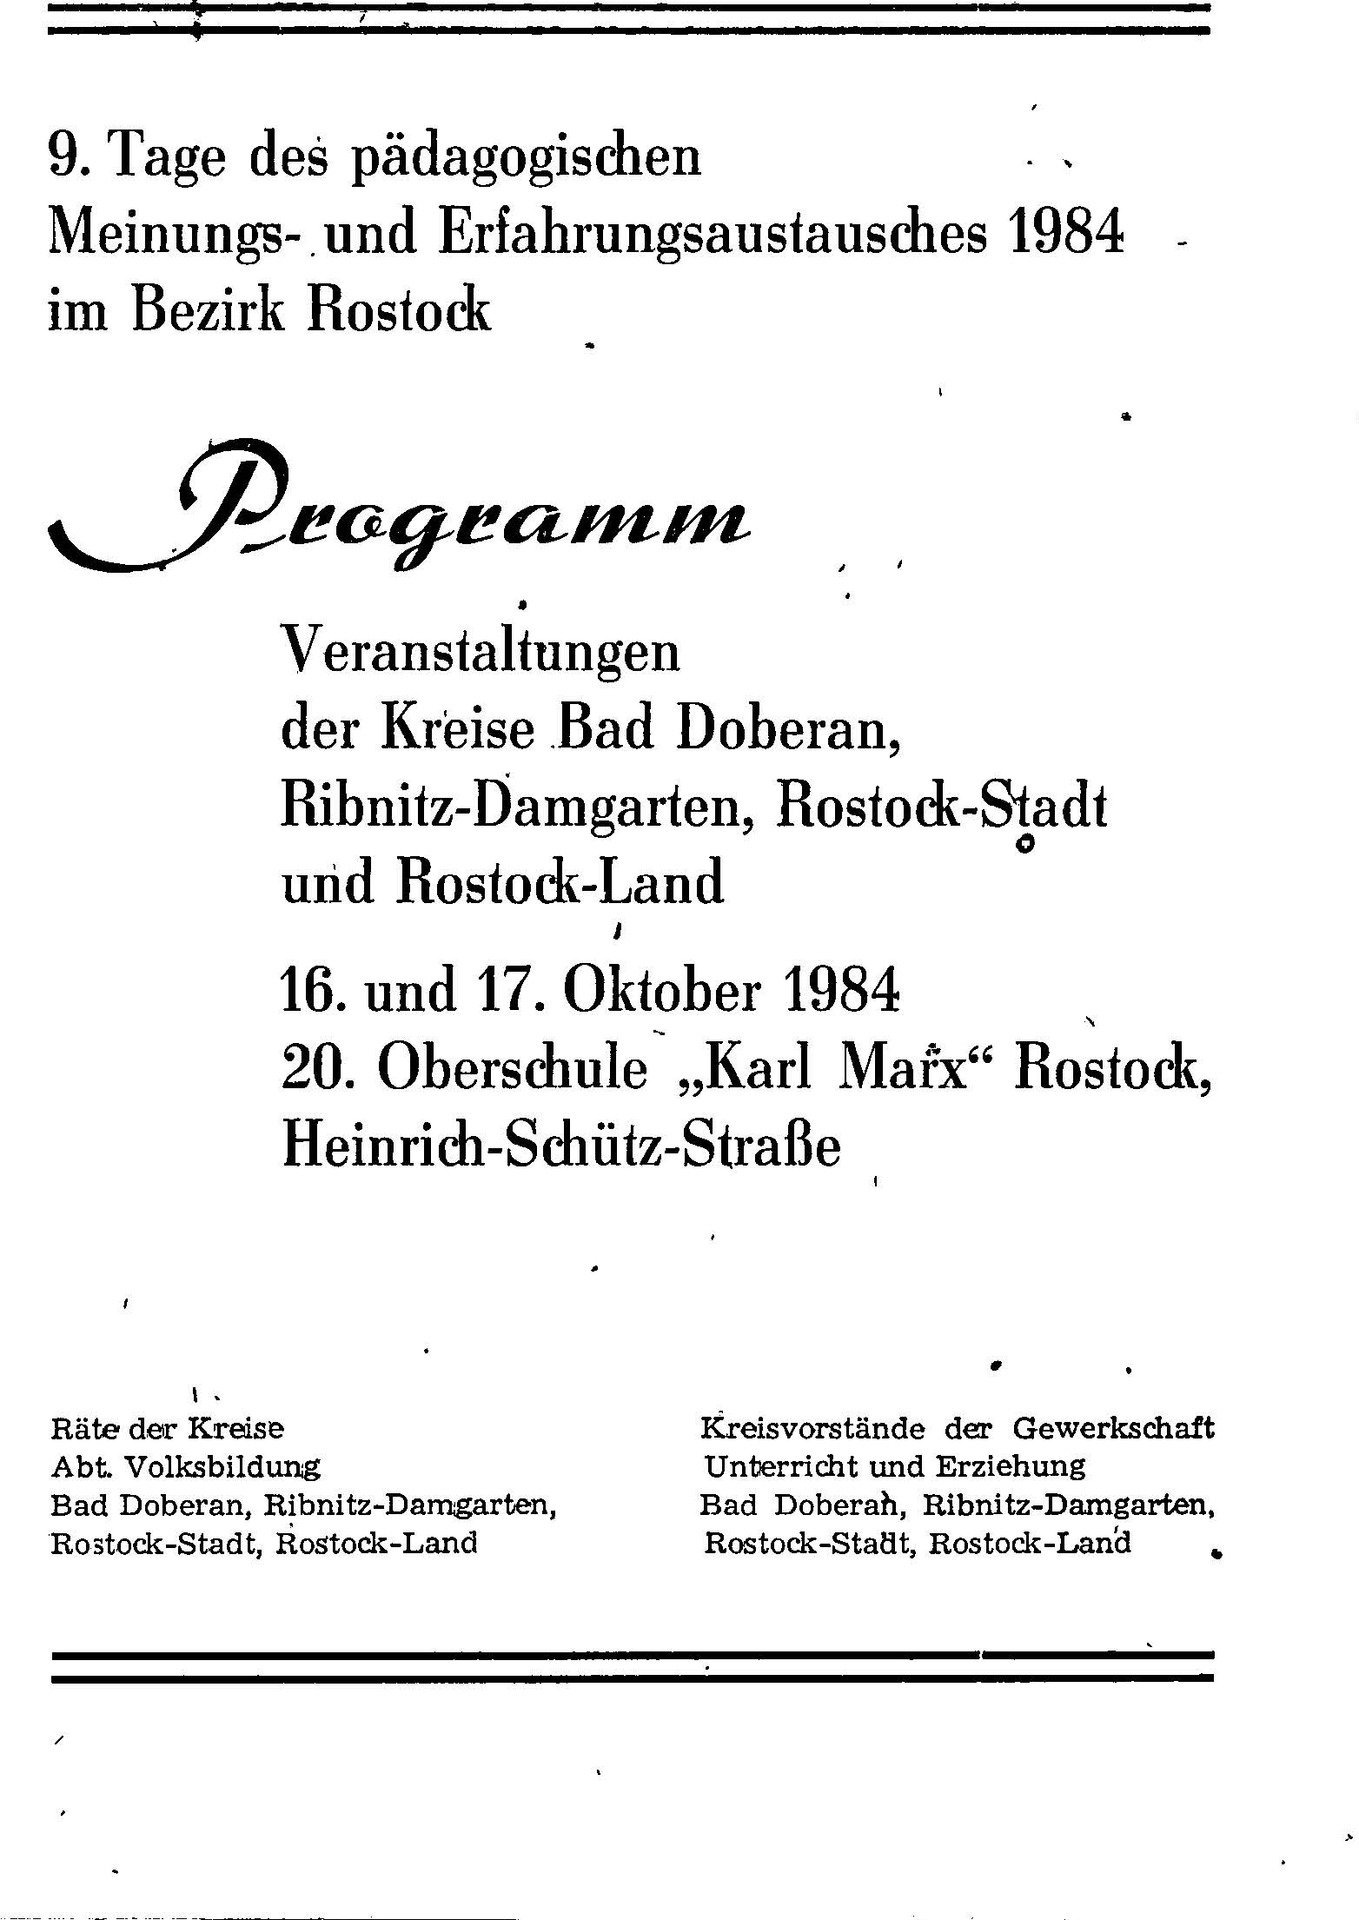 00020_Programm Tages des Pädagogischen Erfahrungsaustauschs Bezirk Rostock_1984_Seite_1.png